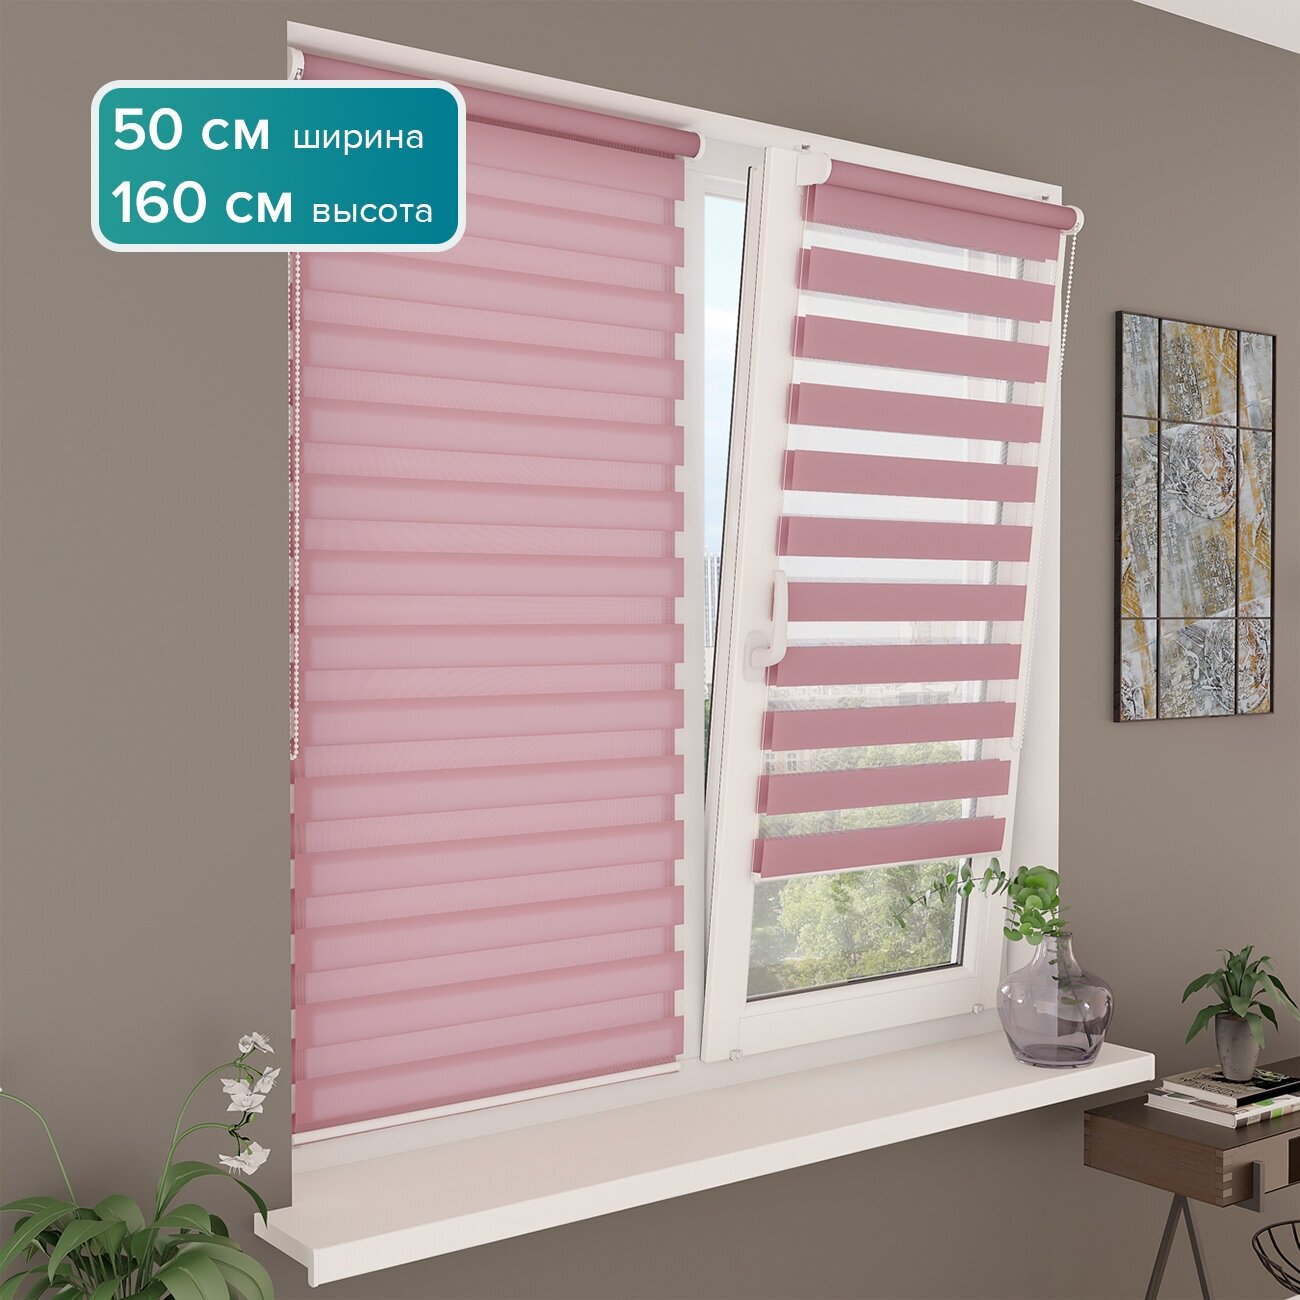 Рулонная штора день-ночь PIKAMO однотонная 50*160 см, цвет: сиреневый рулонные жалюзи для комнаты для кухни для спальни